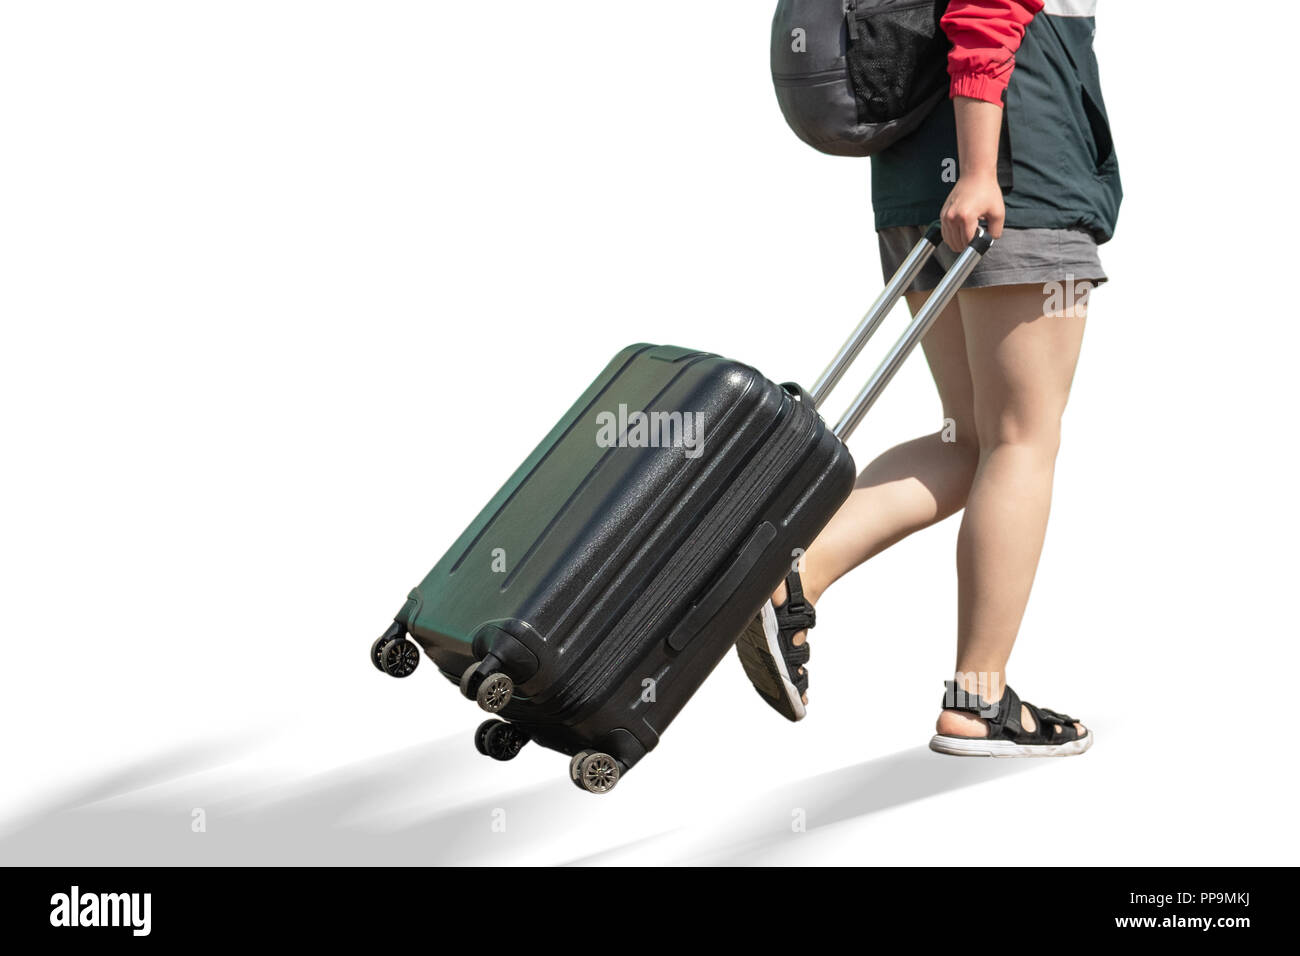 Den unteren Teil des Körpers eines Mädchens mit einem Koffer. Das Mädchen kommt mit einem Koffer. Stockfoto